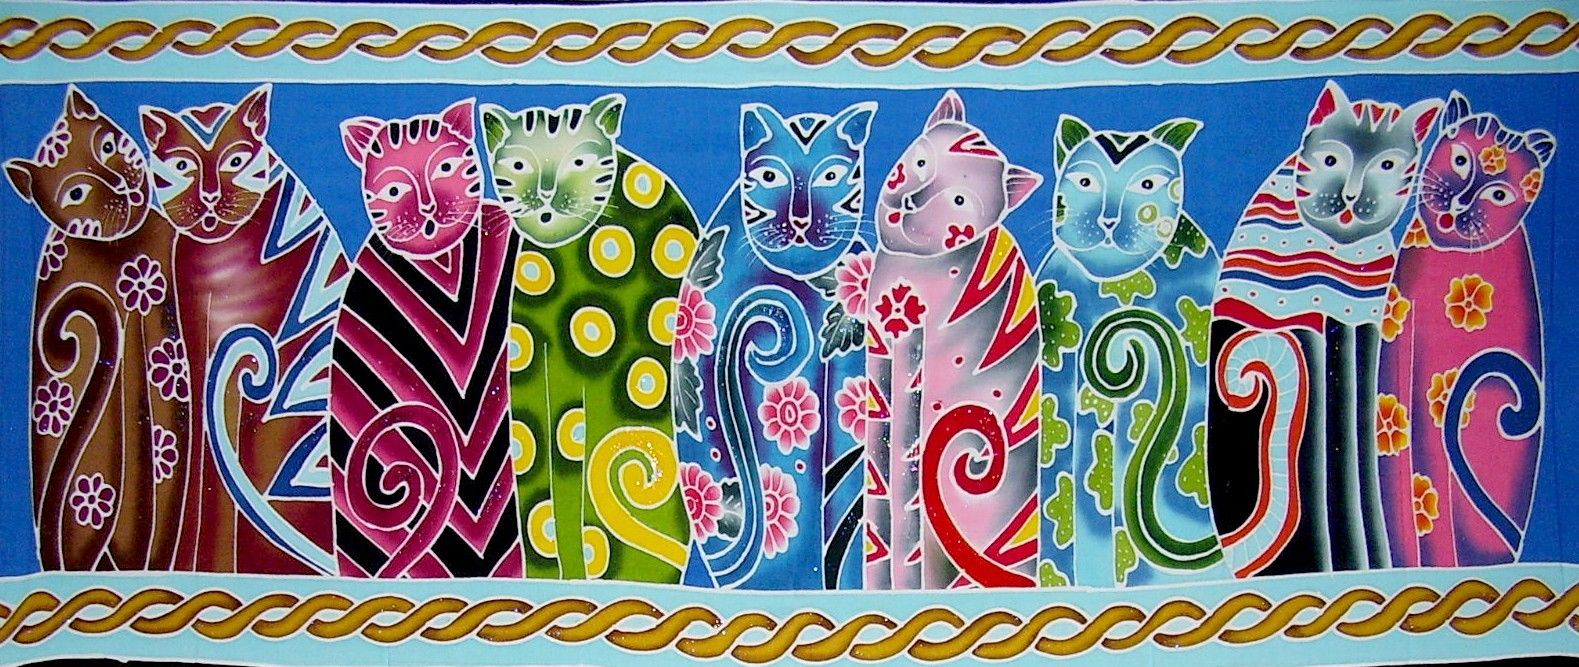 Authentic Batik Textile Art Cats 45" x 20"